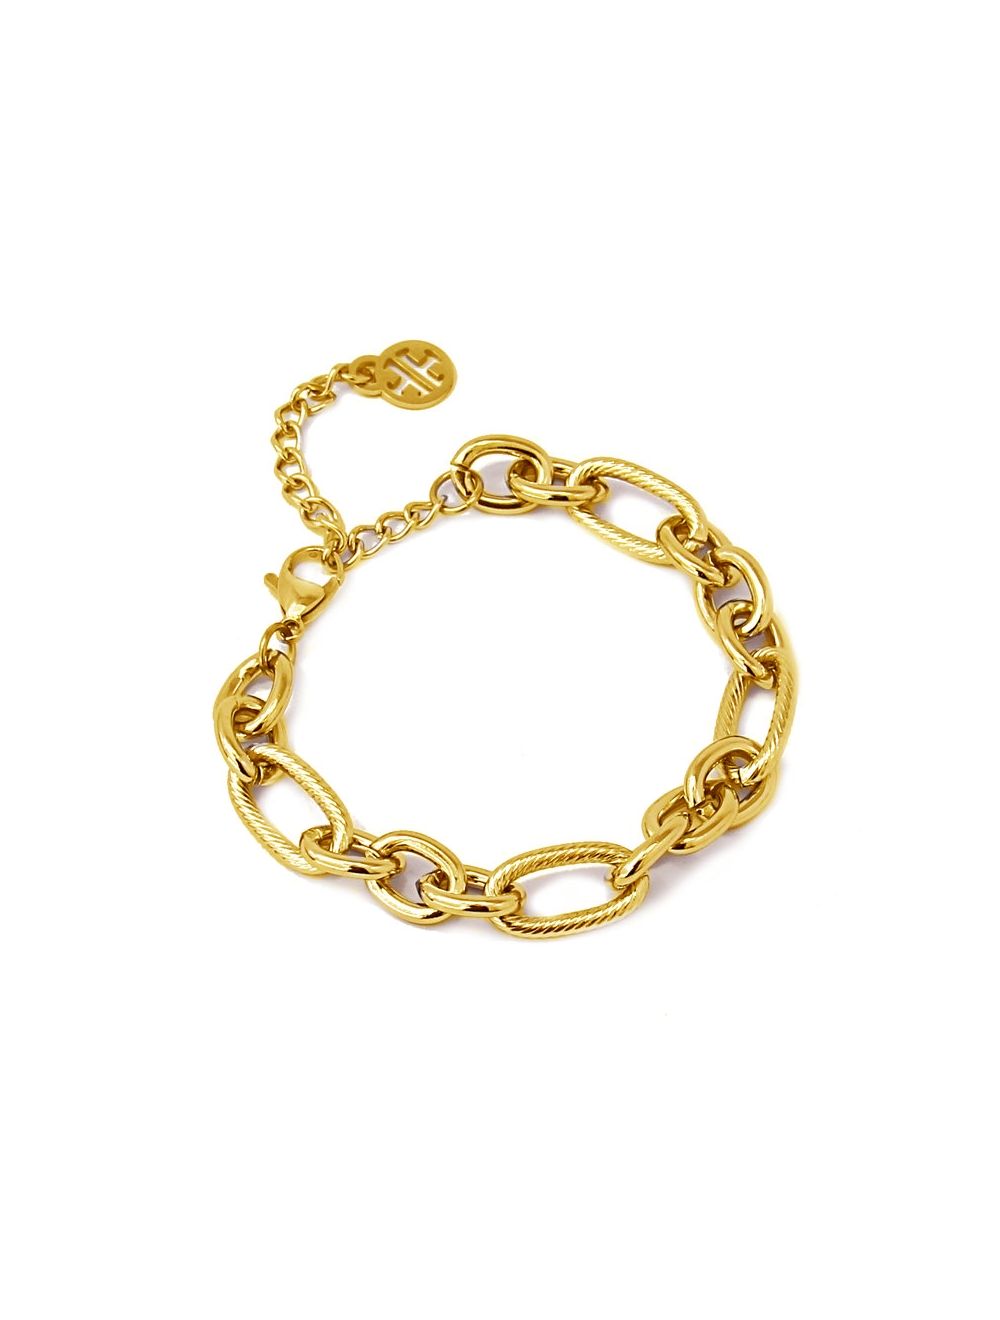 Take Note 14K Gold Plated Link Bracelet